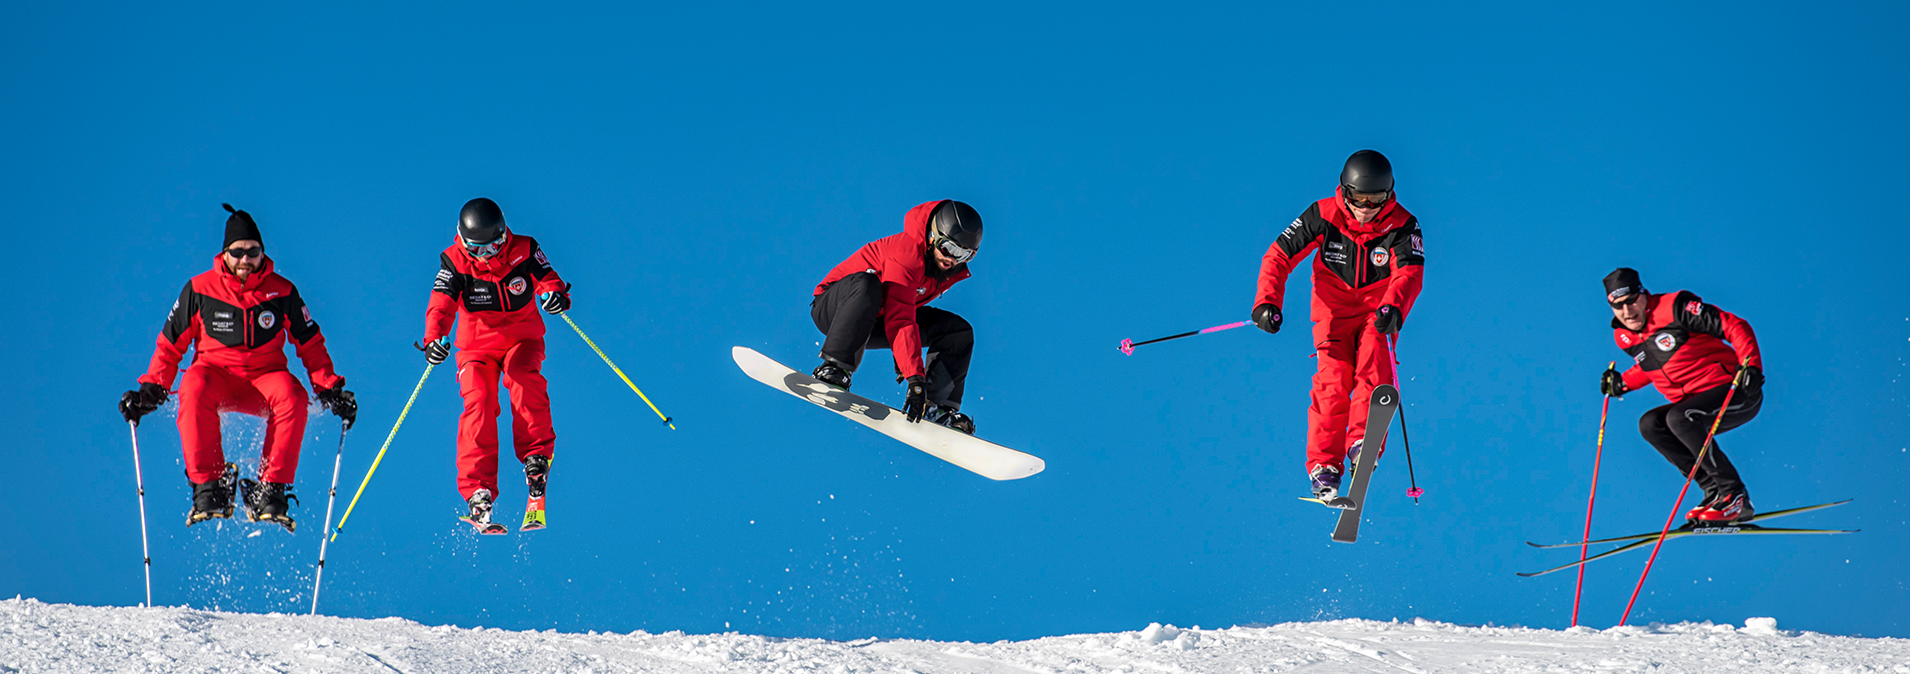 Ski- und Snowboardlehrer der Skischule Klosters springen auf der Piste 